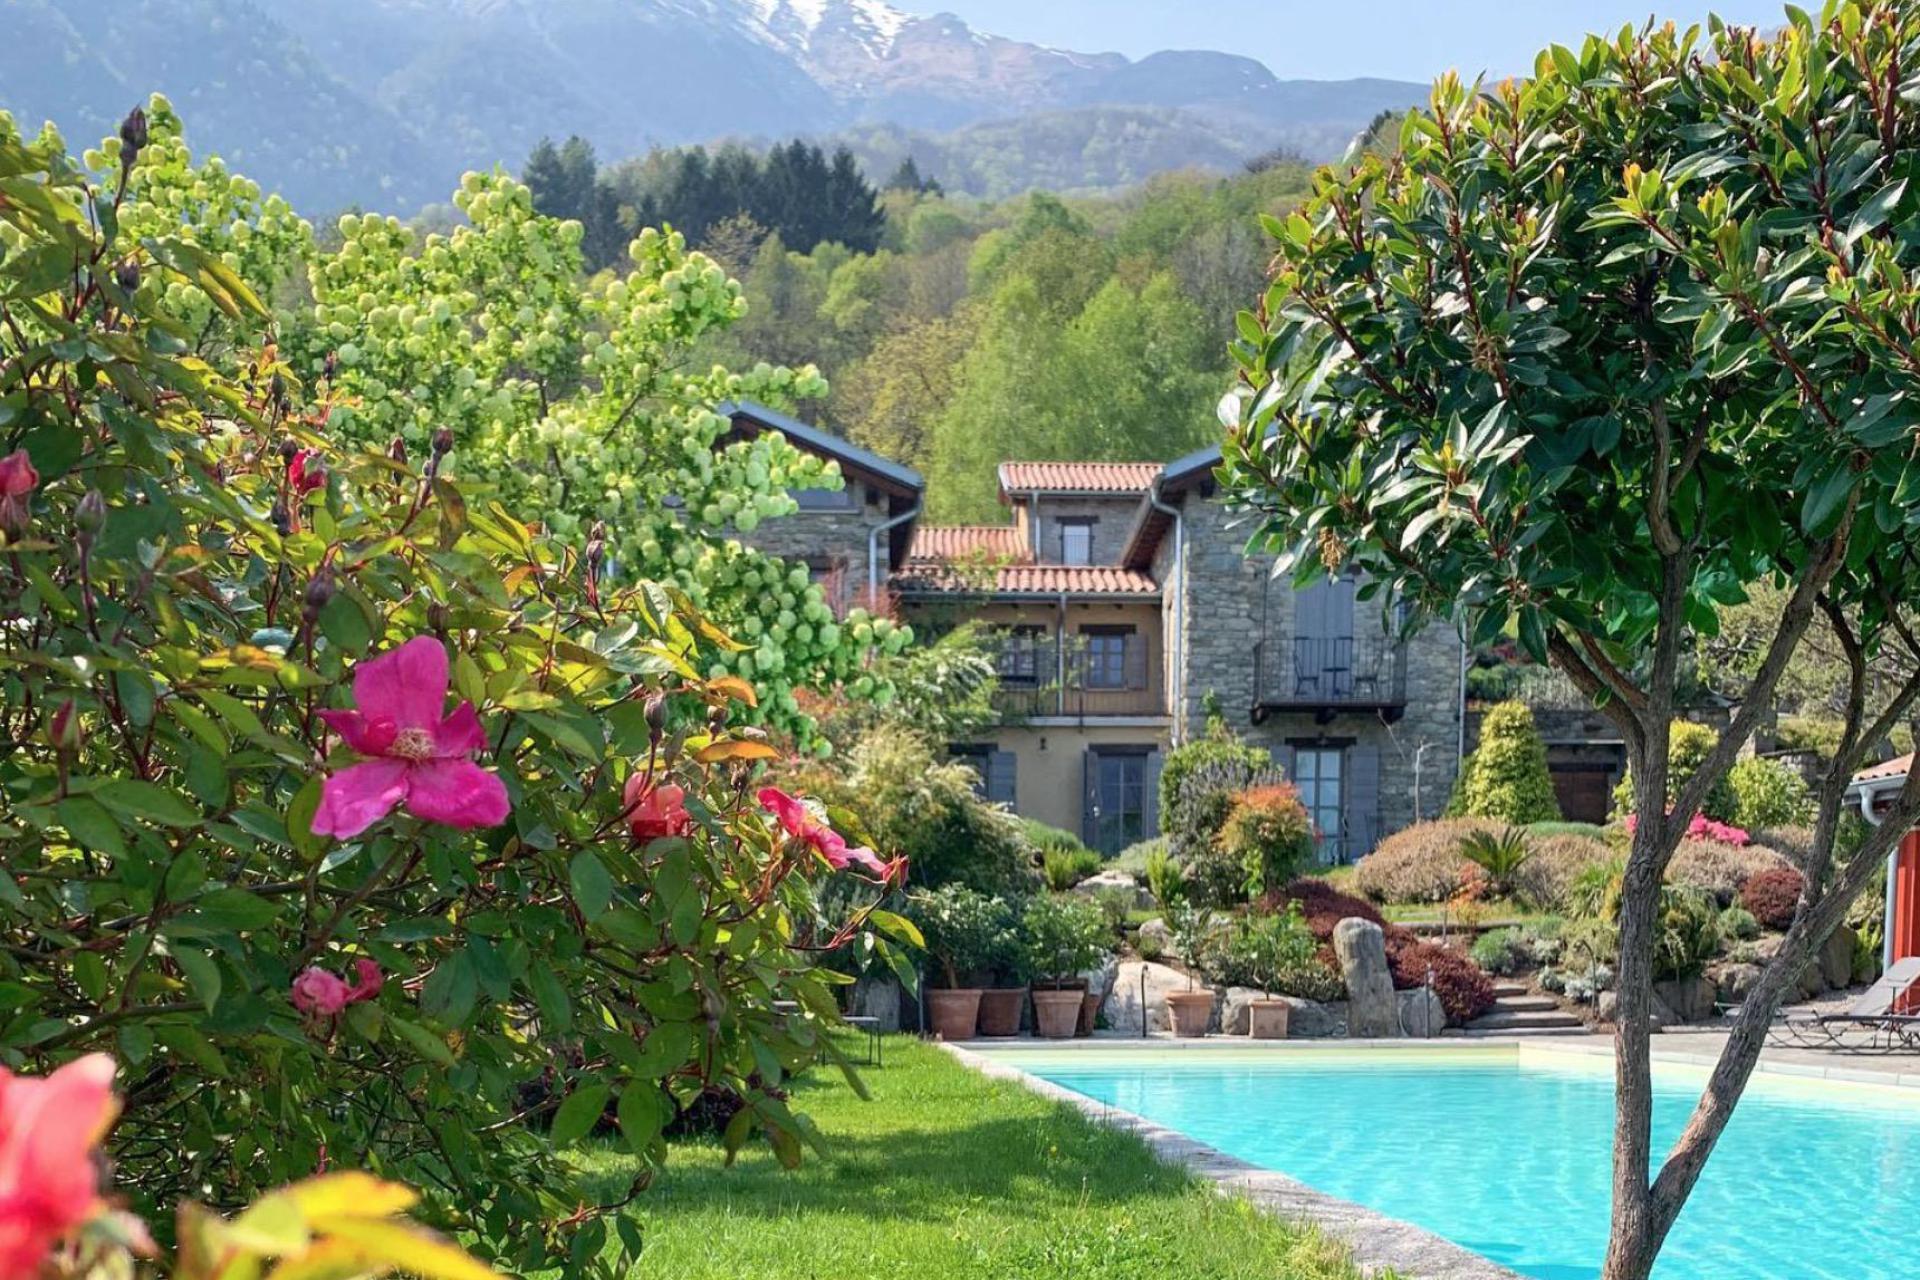 2. Agriturismo di lusso con vista mozzafiato sul Lago di Como